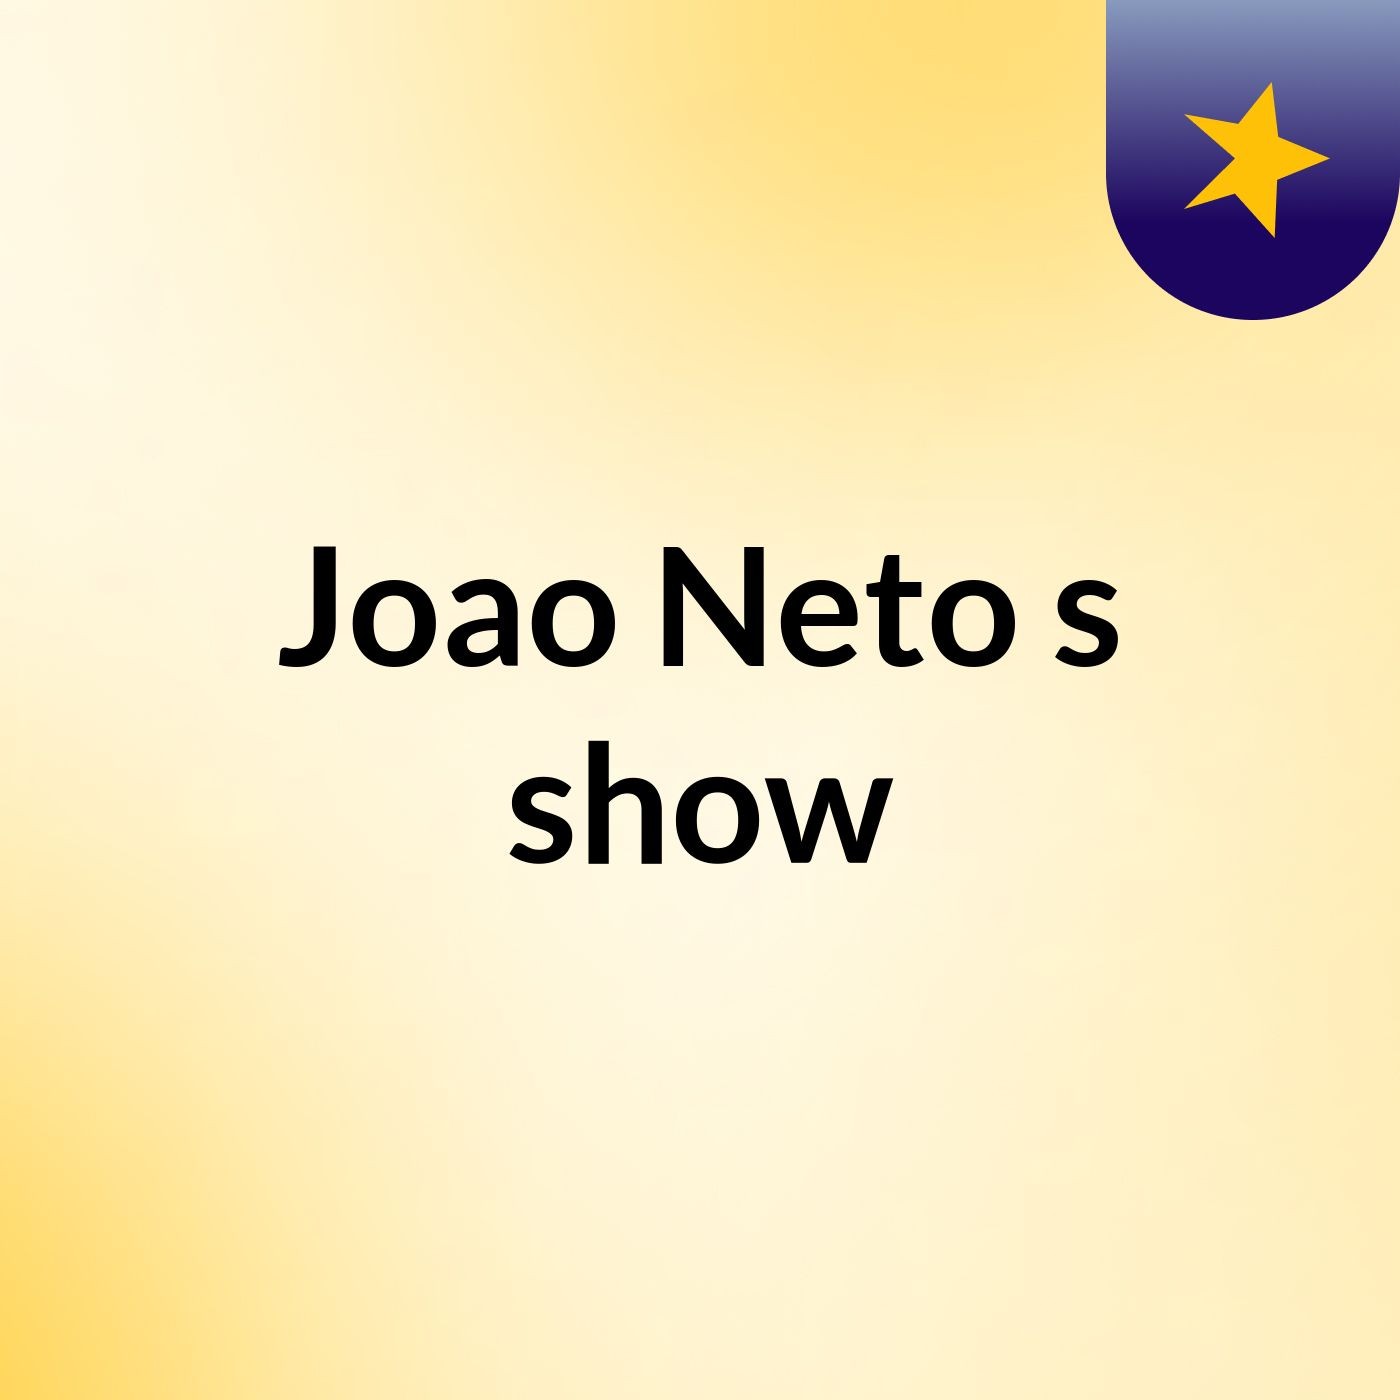 Joao Neto's show